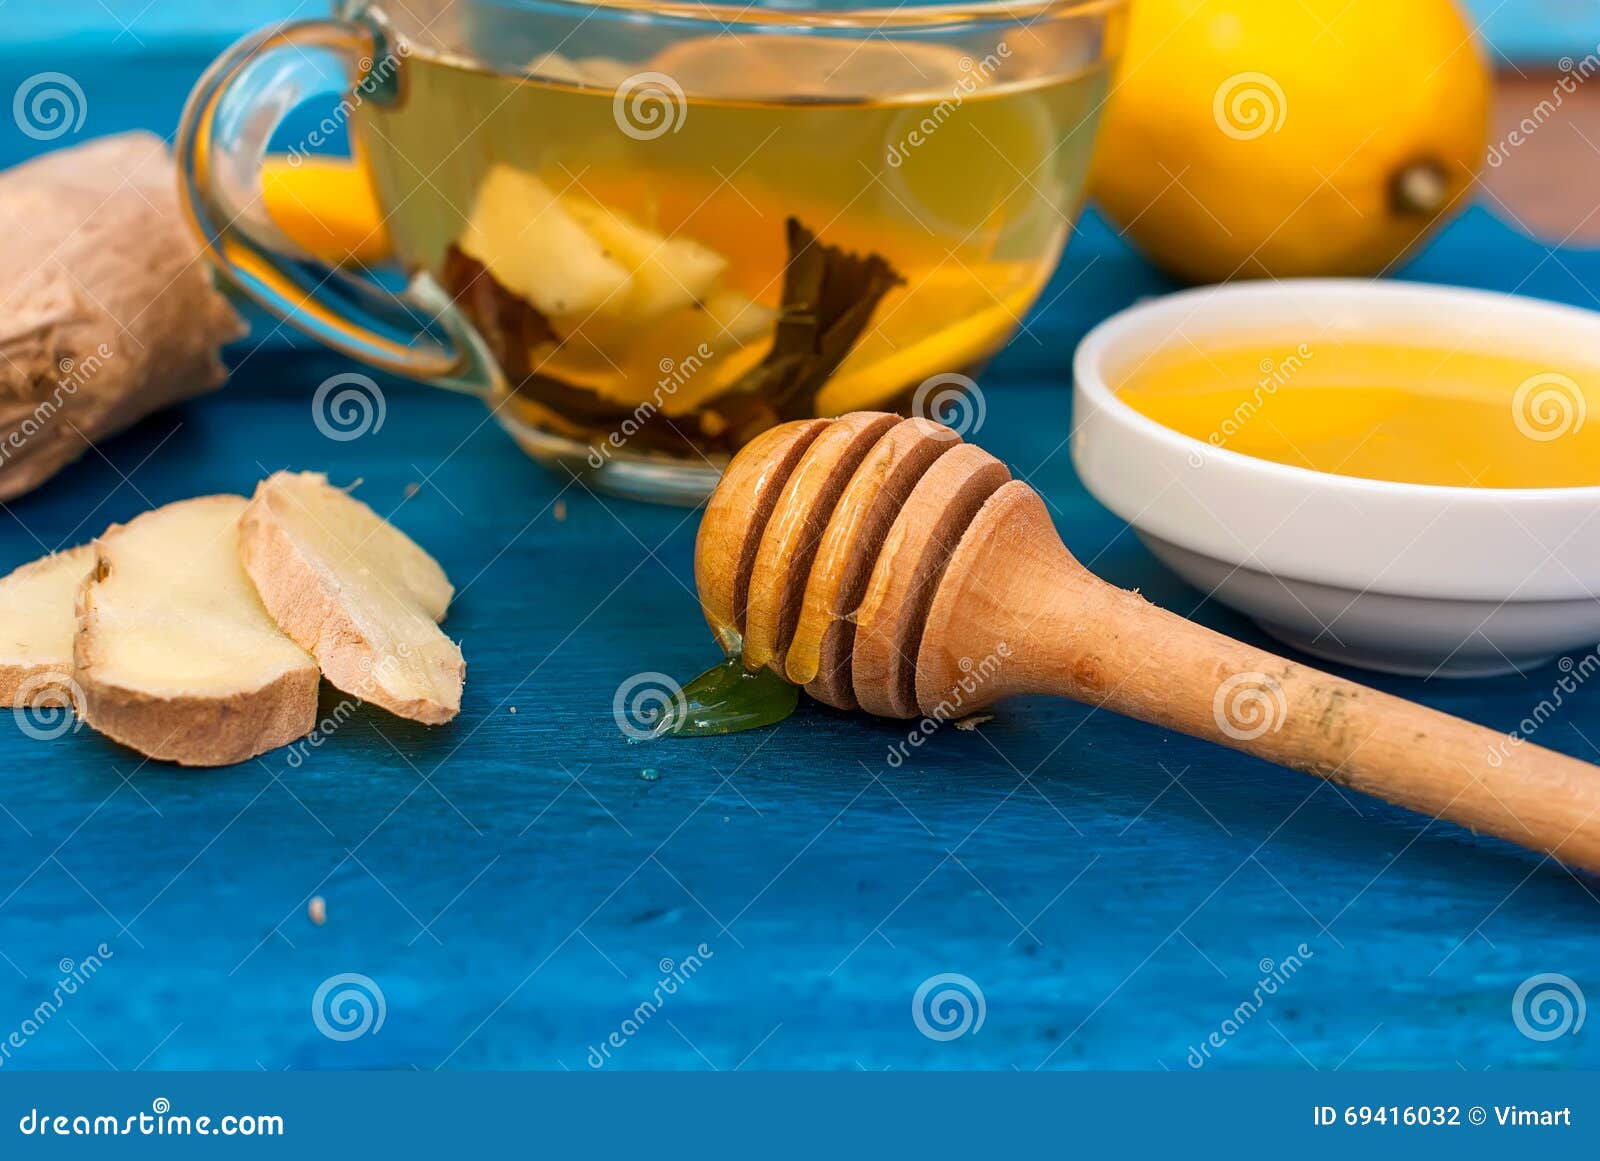 Ingwertee Mit Zitrone Und Honig Stockfoto - Bild von braun, zitrone ...